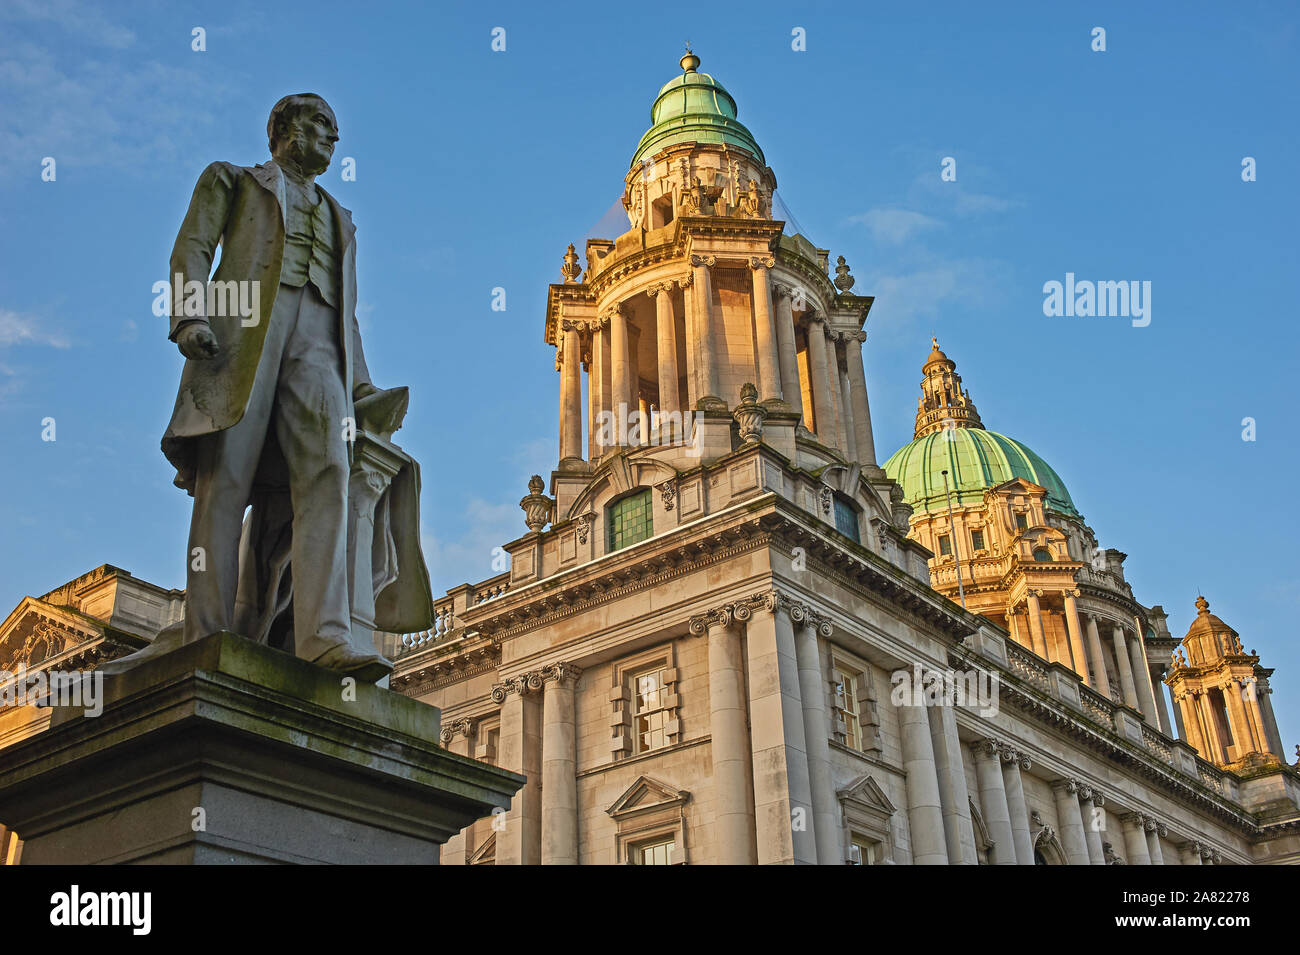 Die Statue von James Harland, MP für Belfast Norzh, und ein Teil der Werft Harland und Woolf, steht außerhalb Rathaus im Zentrum von Belfast Stockfoto